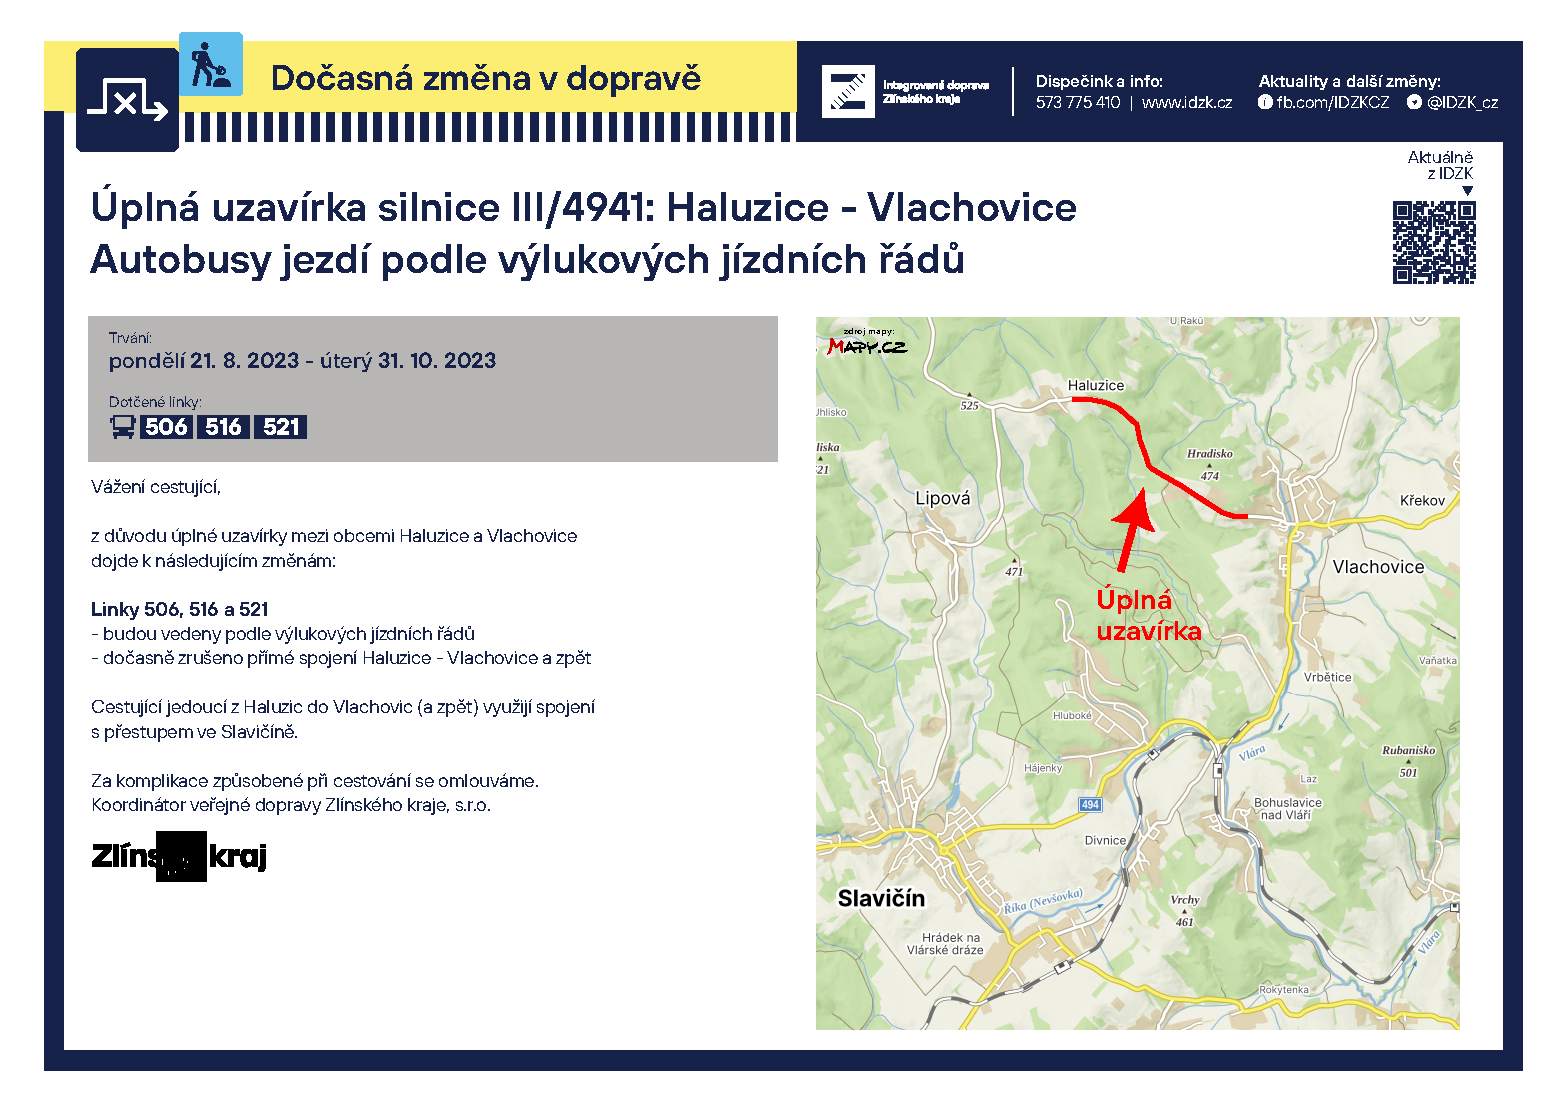 Úplná uzavírka silnice III/4941: Haluzice – Vlachovice (pondělí 21. 8. 2023 - úterý 31. 10. 2023)